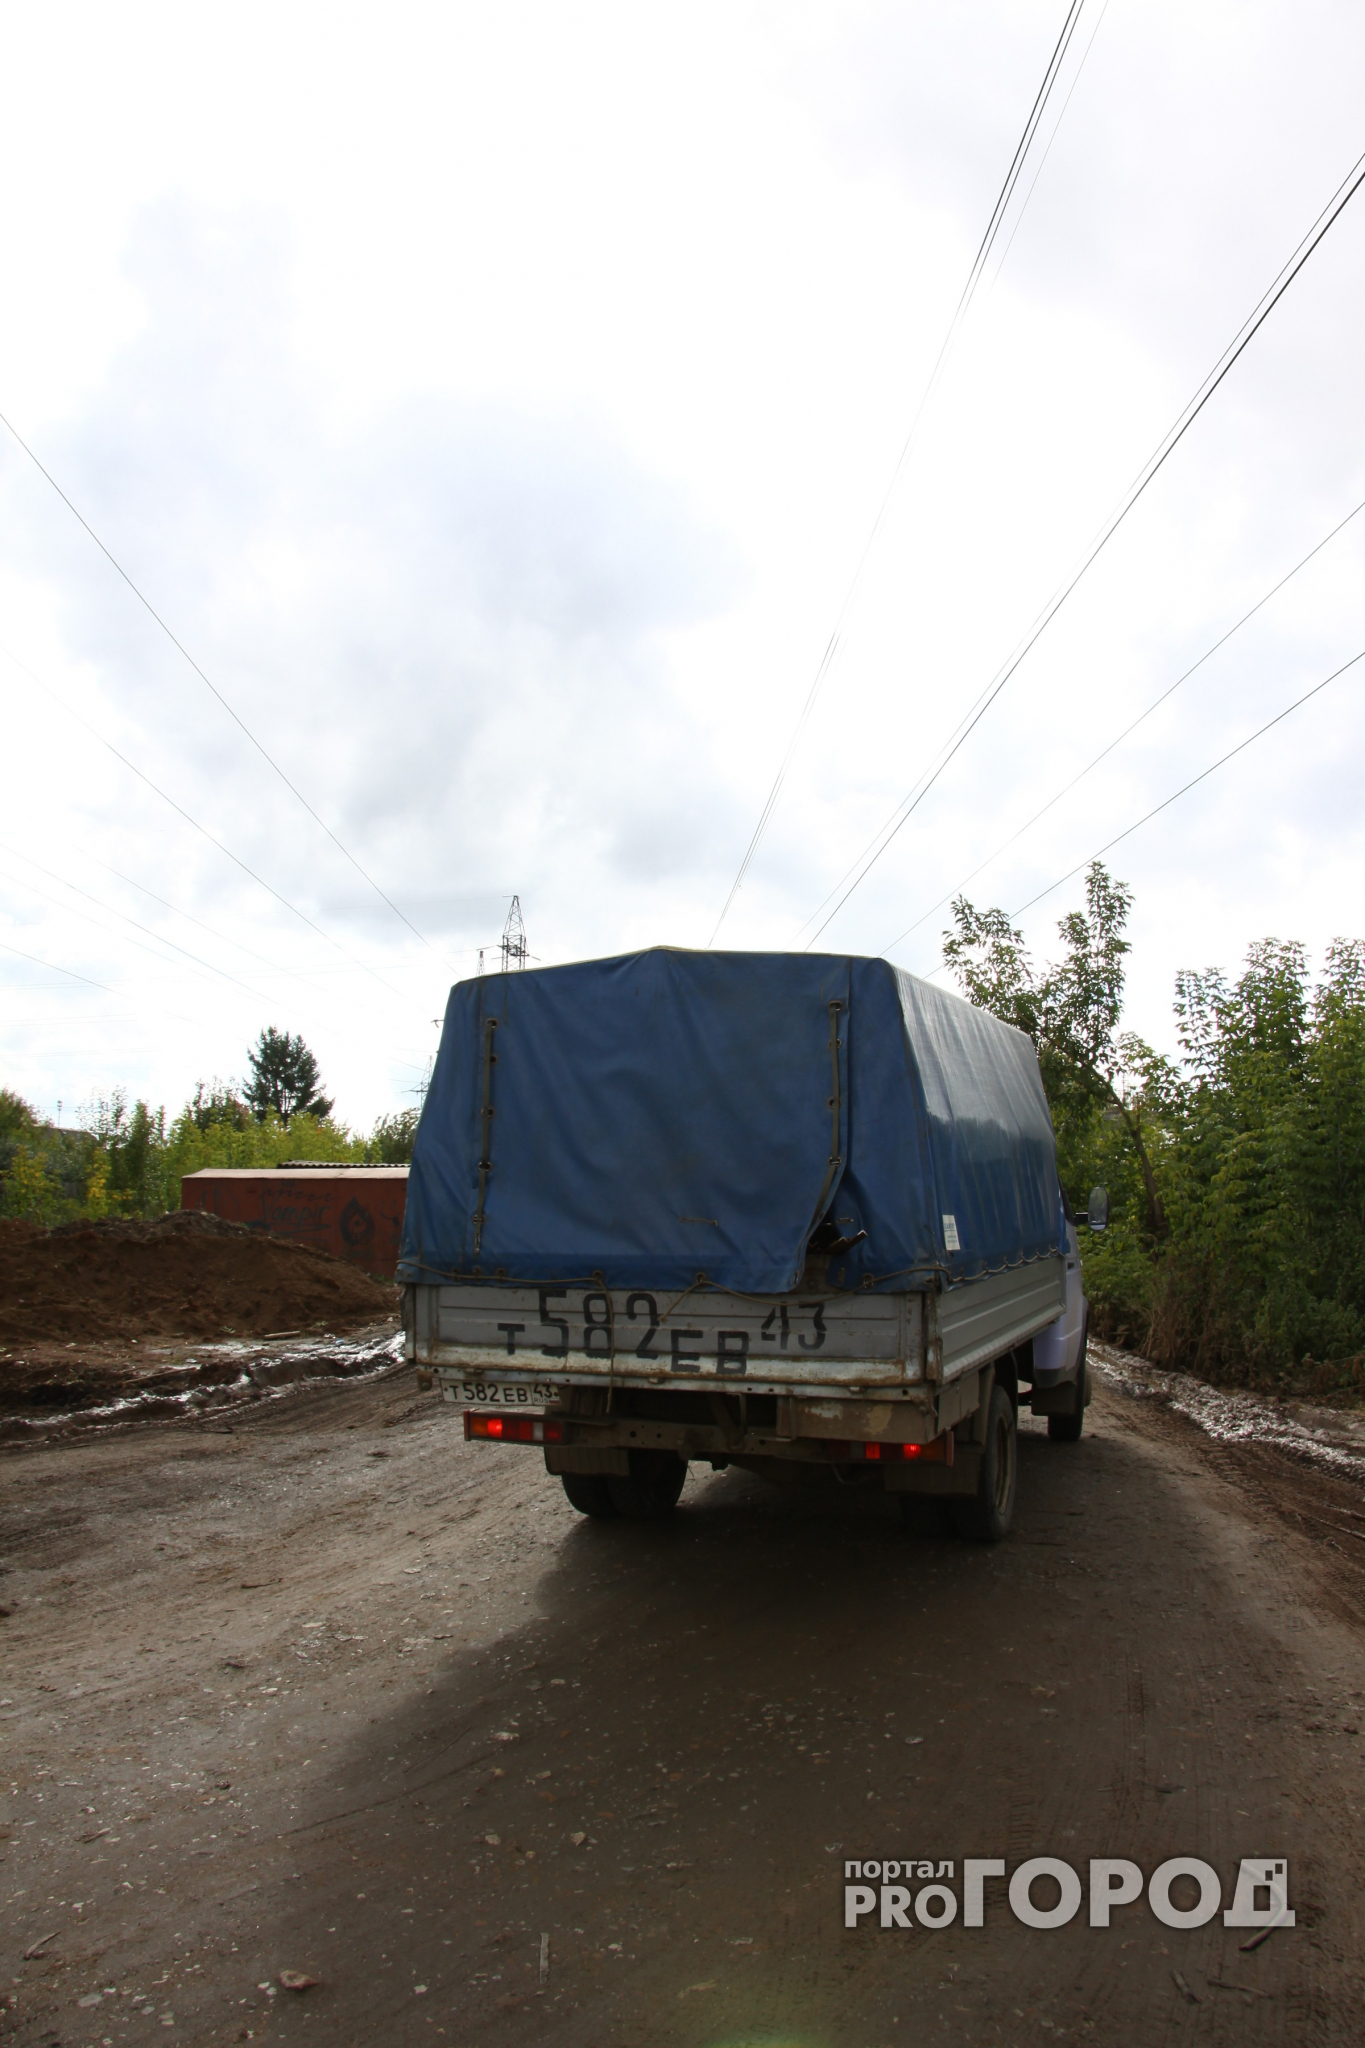 В Ярославле водитель «Газели» случайно убил голосовавшего мужчину за неприличный жест